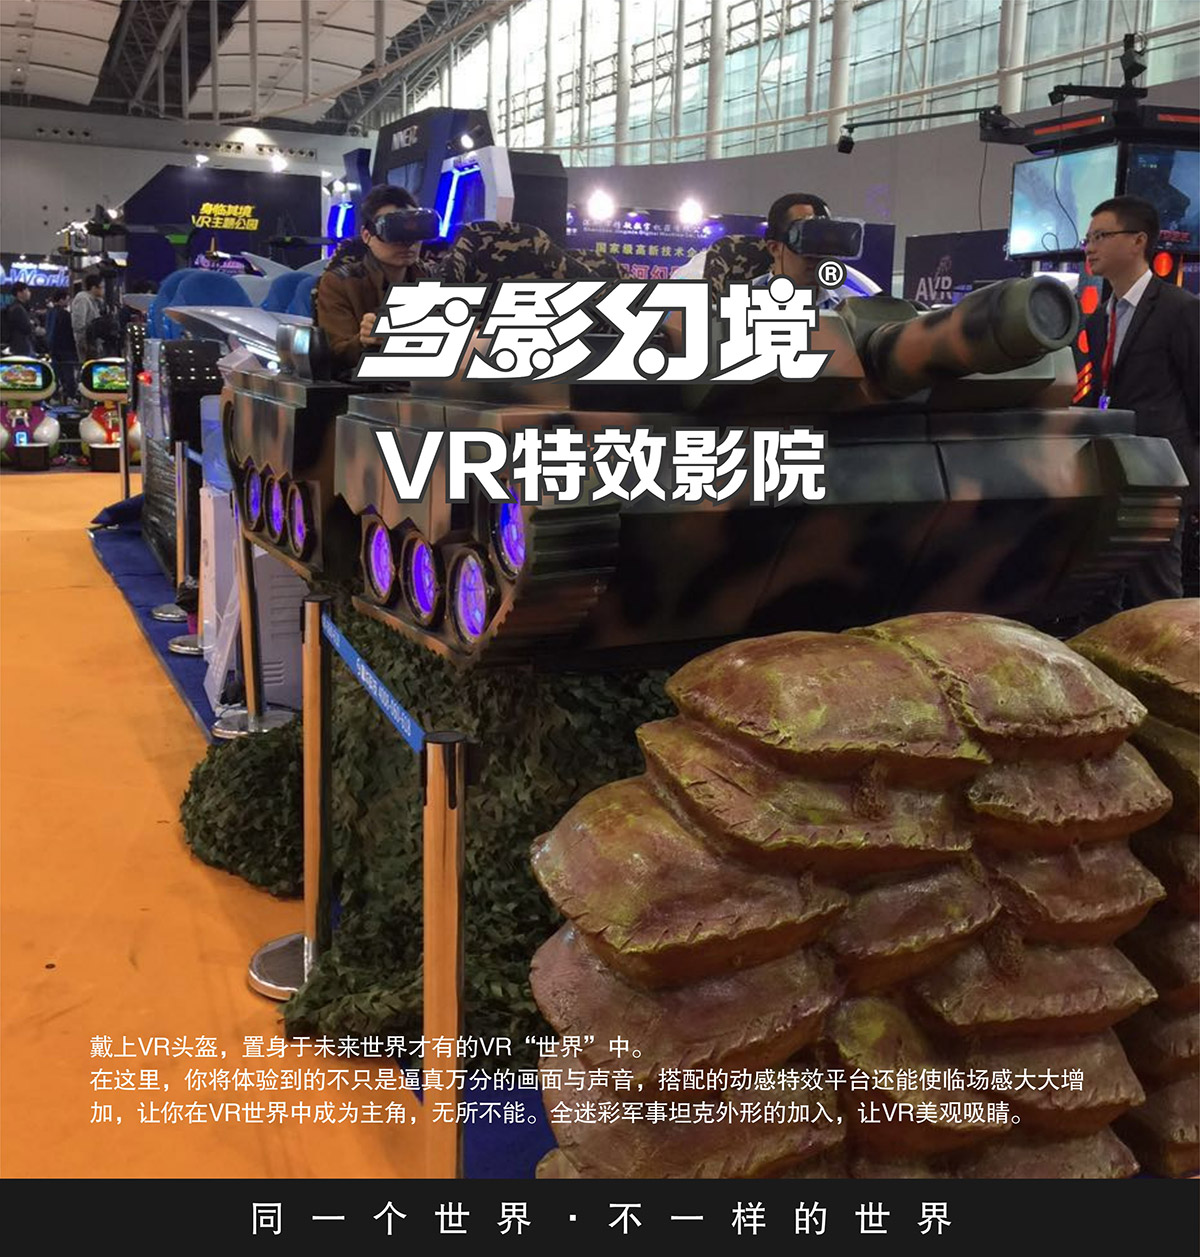 安全体验首款VR特效影院坦克对战.jpg